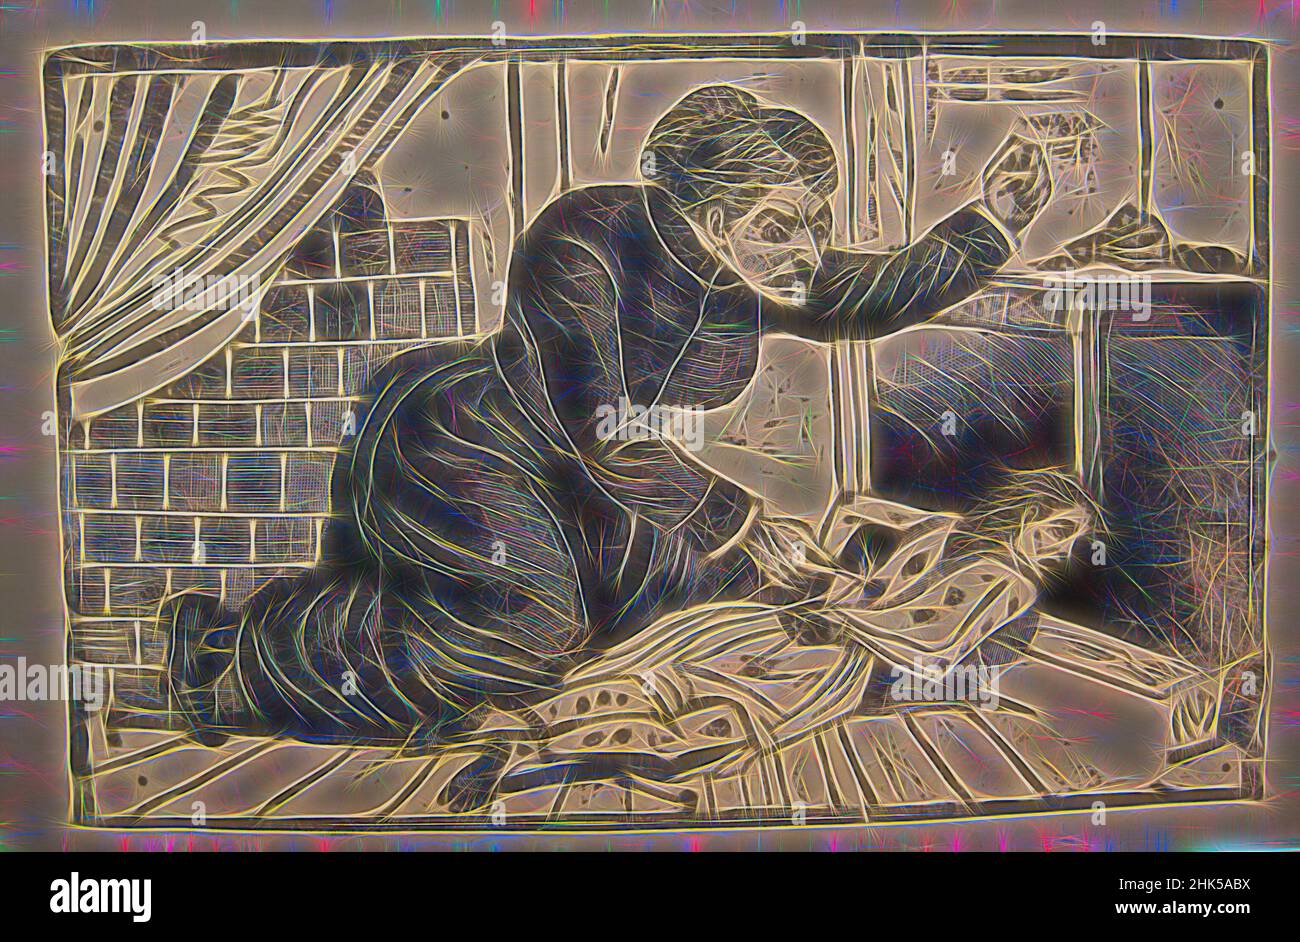 Inspiriert von The Crime of la Bejarno, Jose Guadelupe Posada, mexikanisch, 1852-1913, Relief-Gravur auf Typ Metall, 6 1/4 x 9 5/8 Zoll, 15,9 x 24,4 cm, neu erfunden von Artotop. Klassische Kunst neu erfunden mit einem modernen Twist. Design von warmen fröhlichen Leuchten der Helligkeit und Lichtstrahl Strahlkraft. Fotografie inspiriert von Surrealismus und Futurismus, umarmt dynamische Energie der modernen Technologie, Bewegung, Geschwindigkeit und Kultur zu revolutionieren Stockfoto